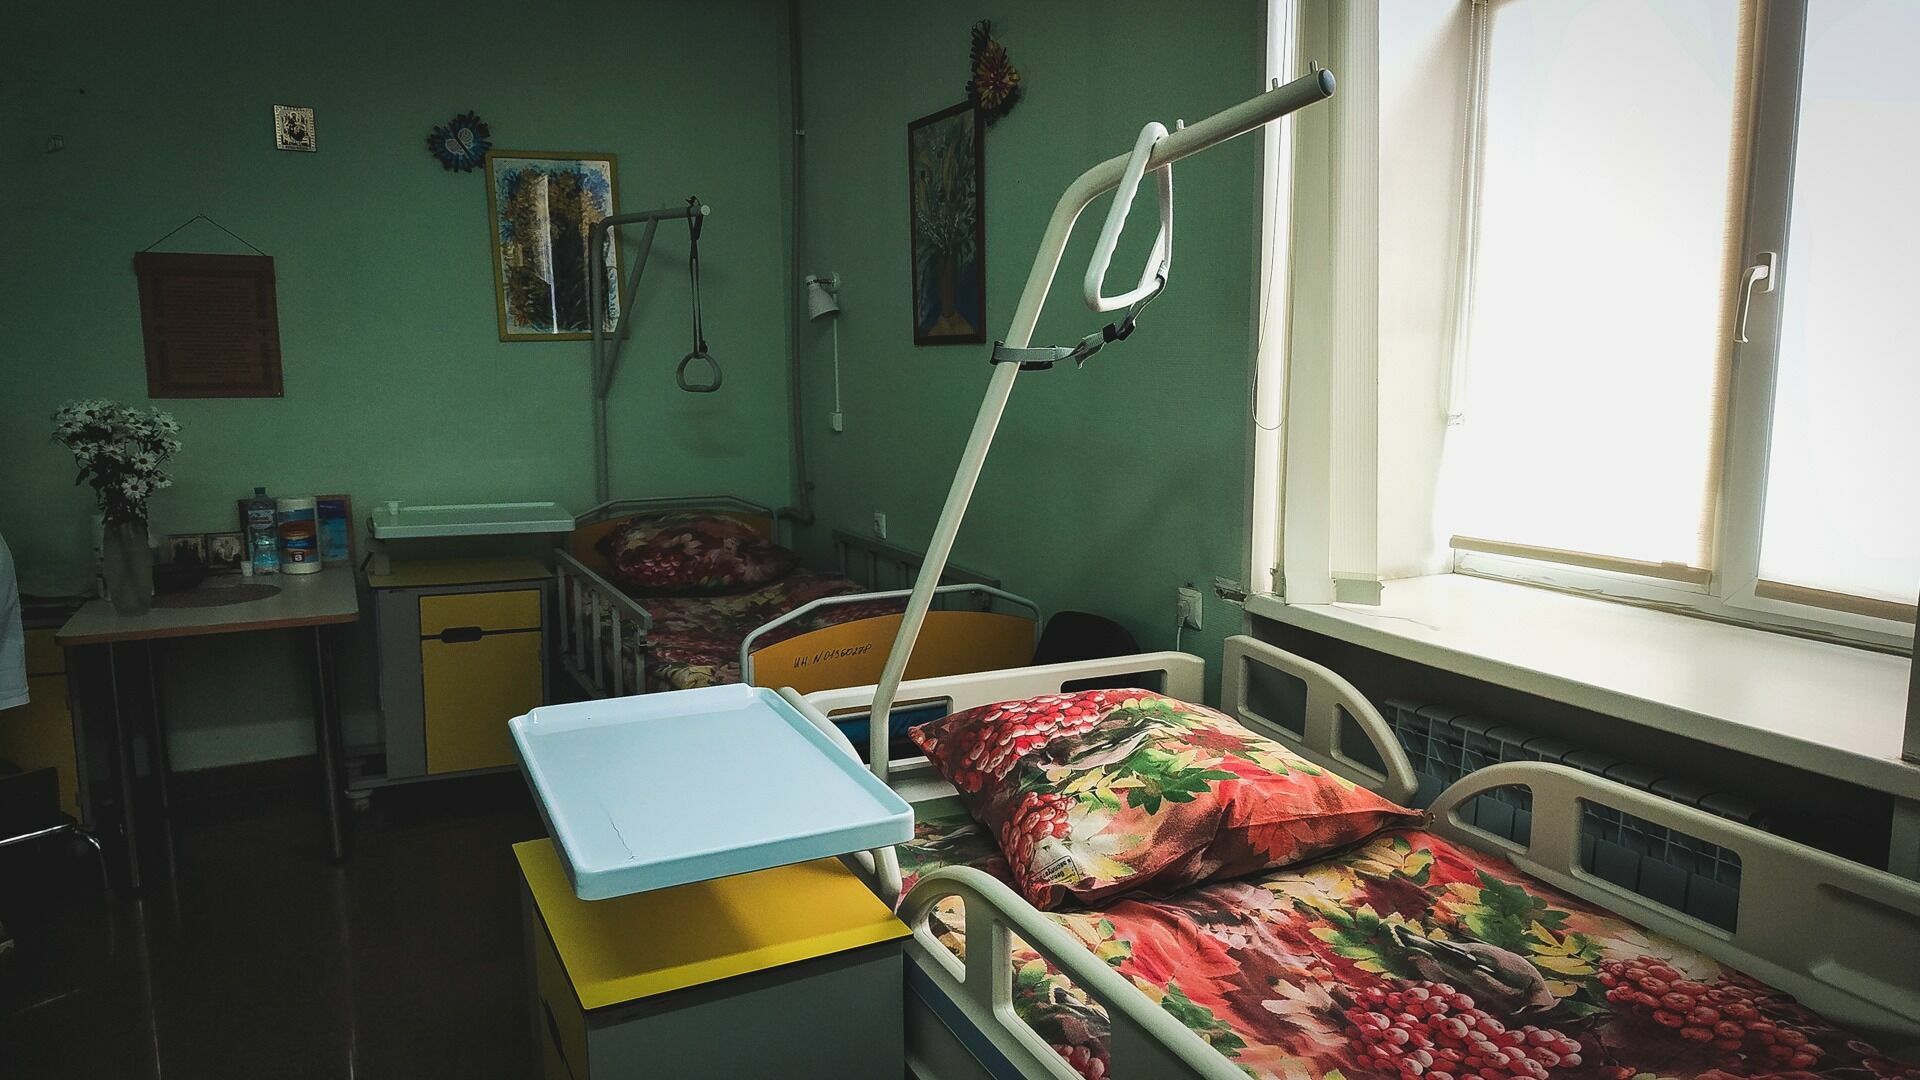 Пациент под наркозом выпал из окна больницы в Нижнем Новгороде и погиб